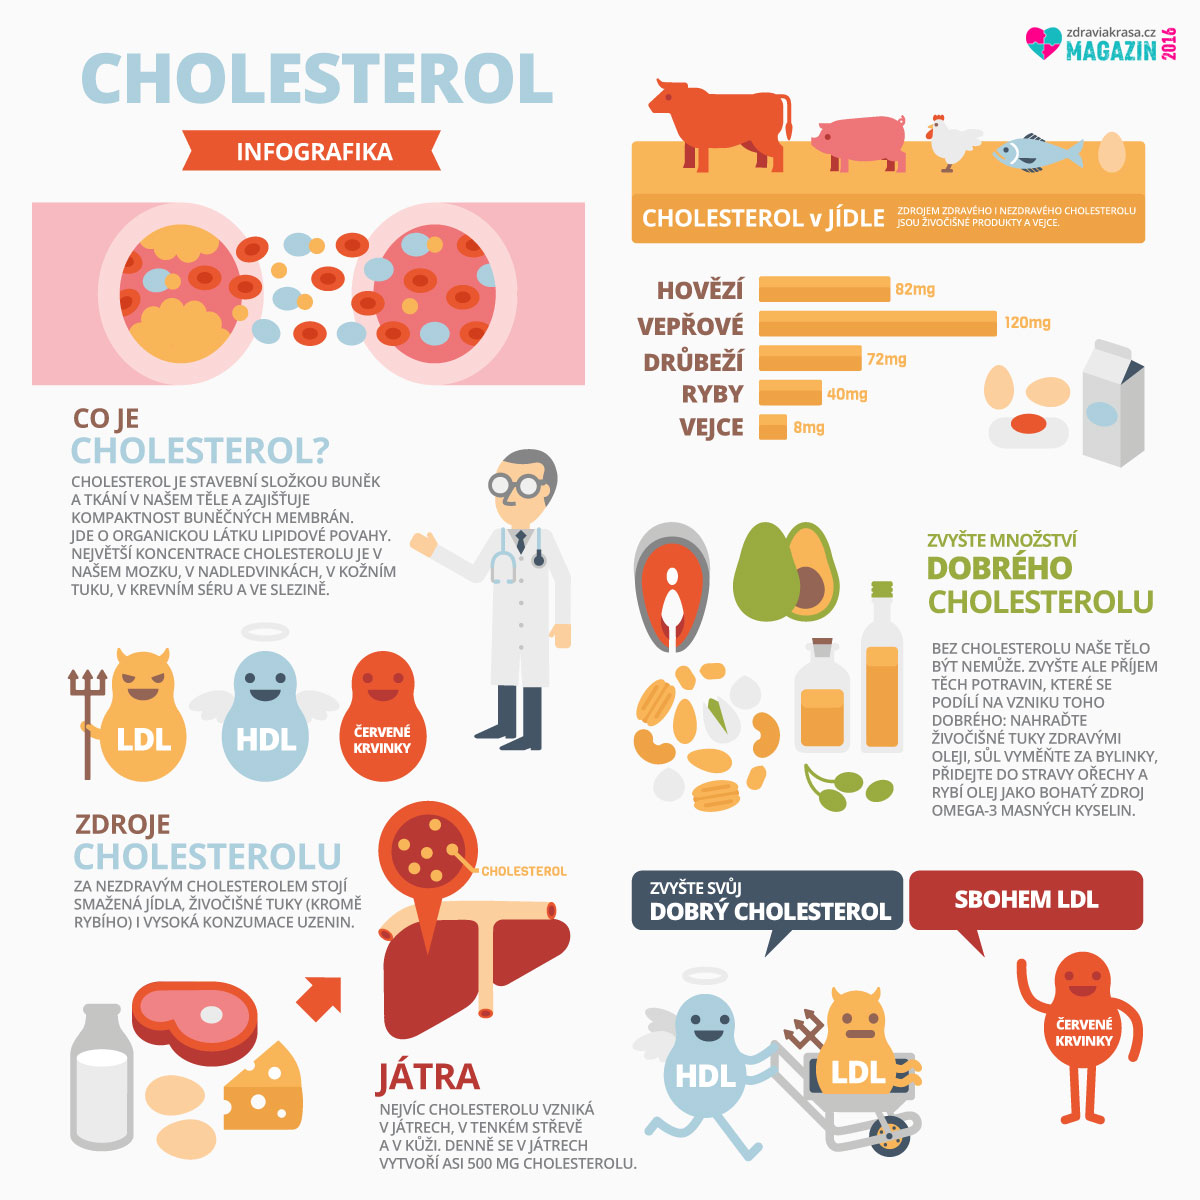 Naše tělo rozlišuje dobrý a špatný cholesterol – víte, jak to s nimi doopravdy je? 